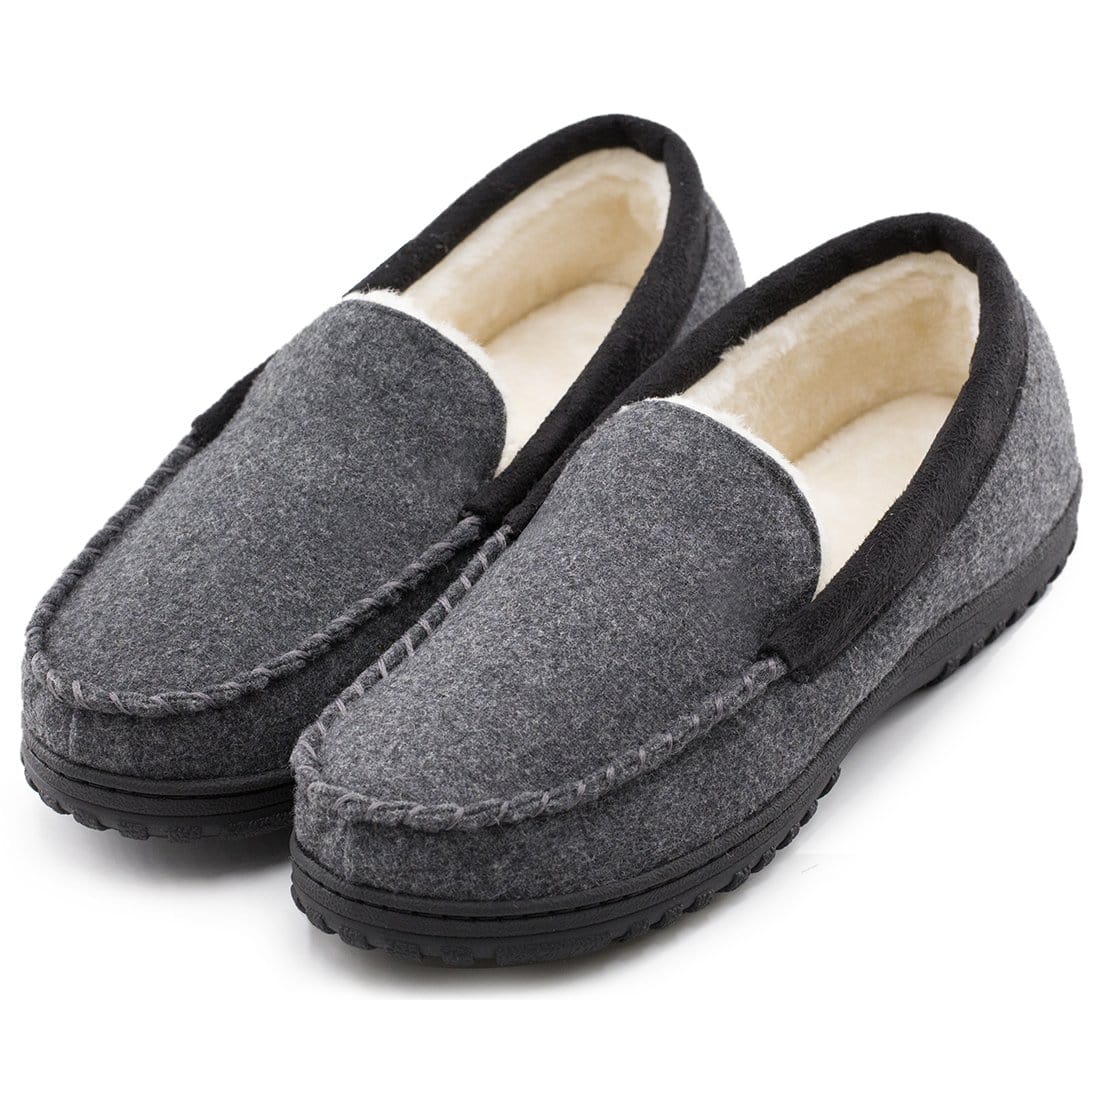 EverFoams Men's Wool-Felt Lined Moccasin Slippers